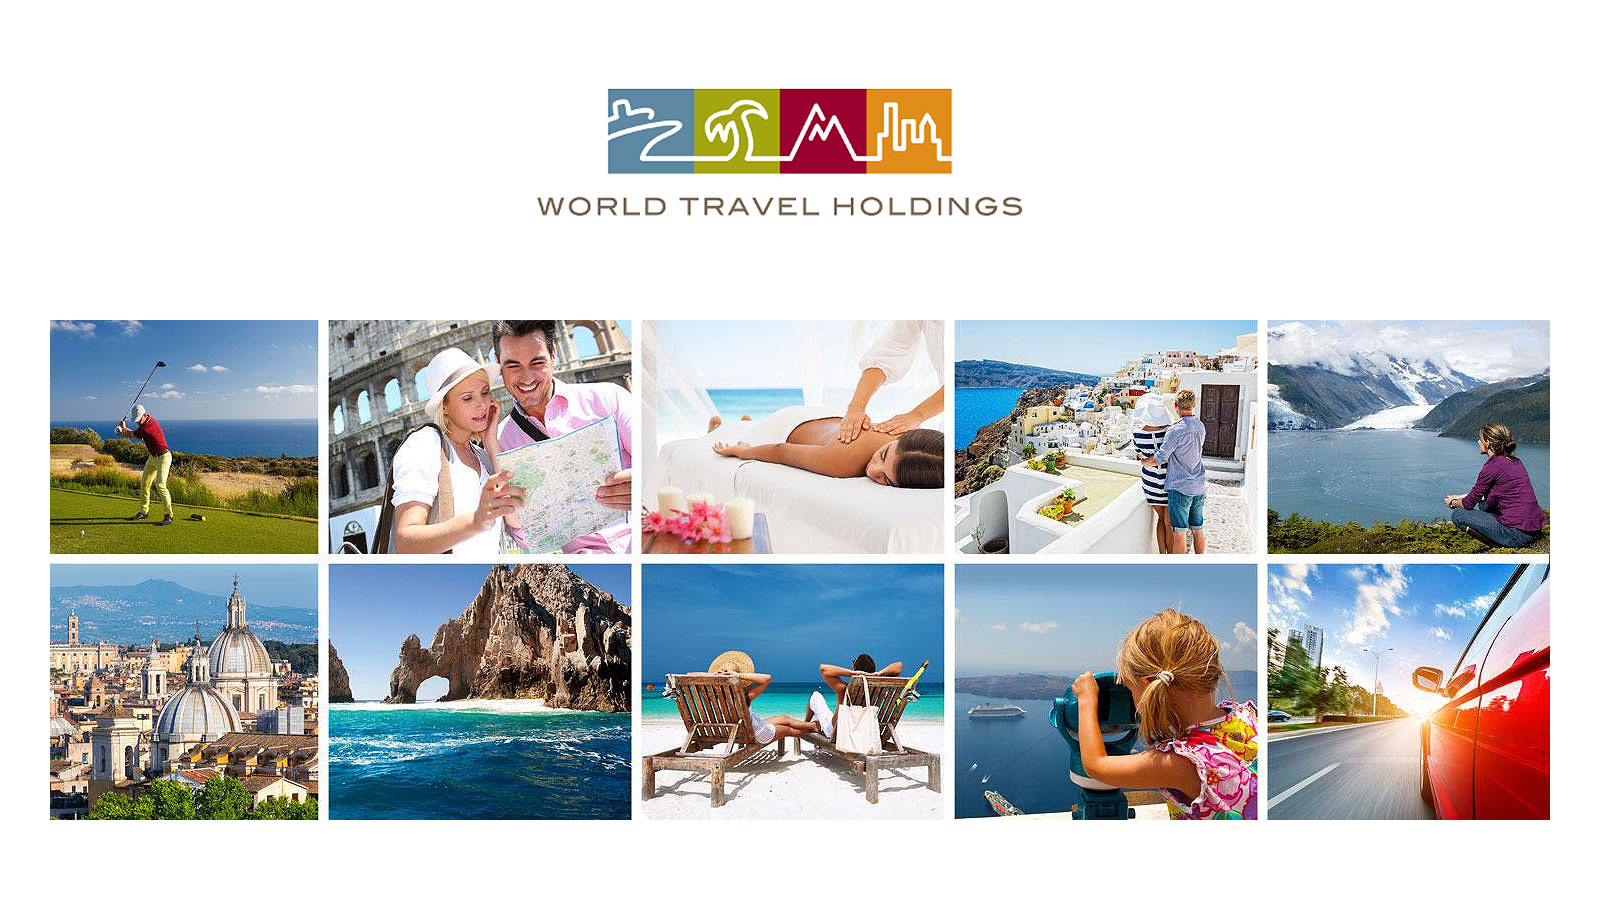 World-Travel-Holdings